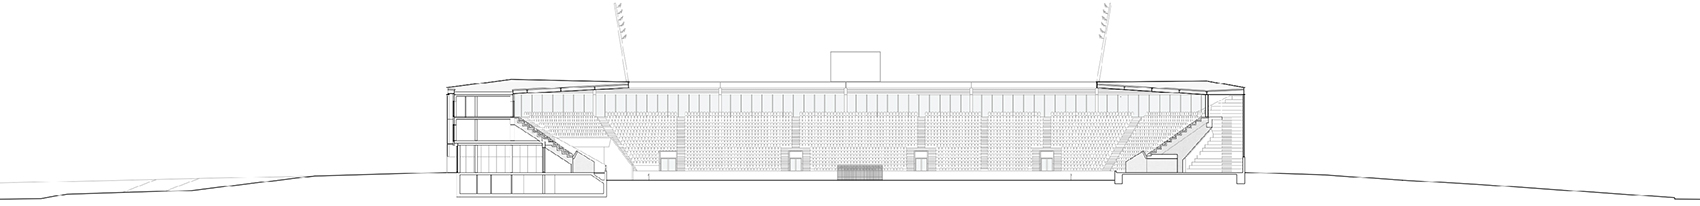 洛桑市新足球场馆，瑞士/散发宁静感的市郊体育设施-62